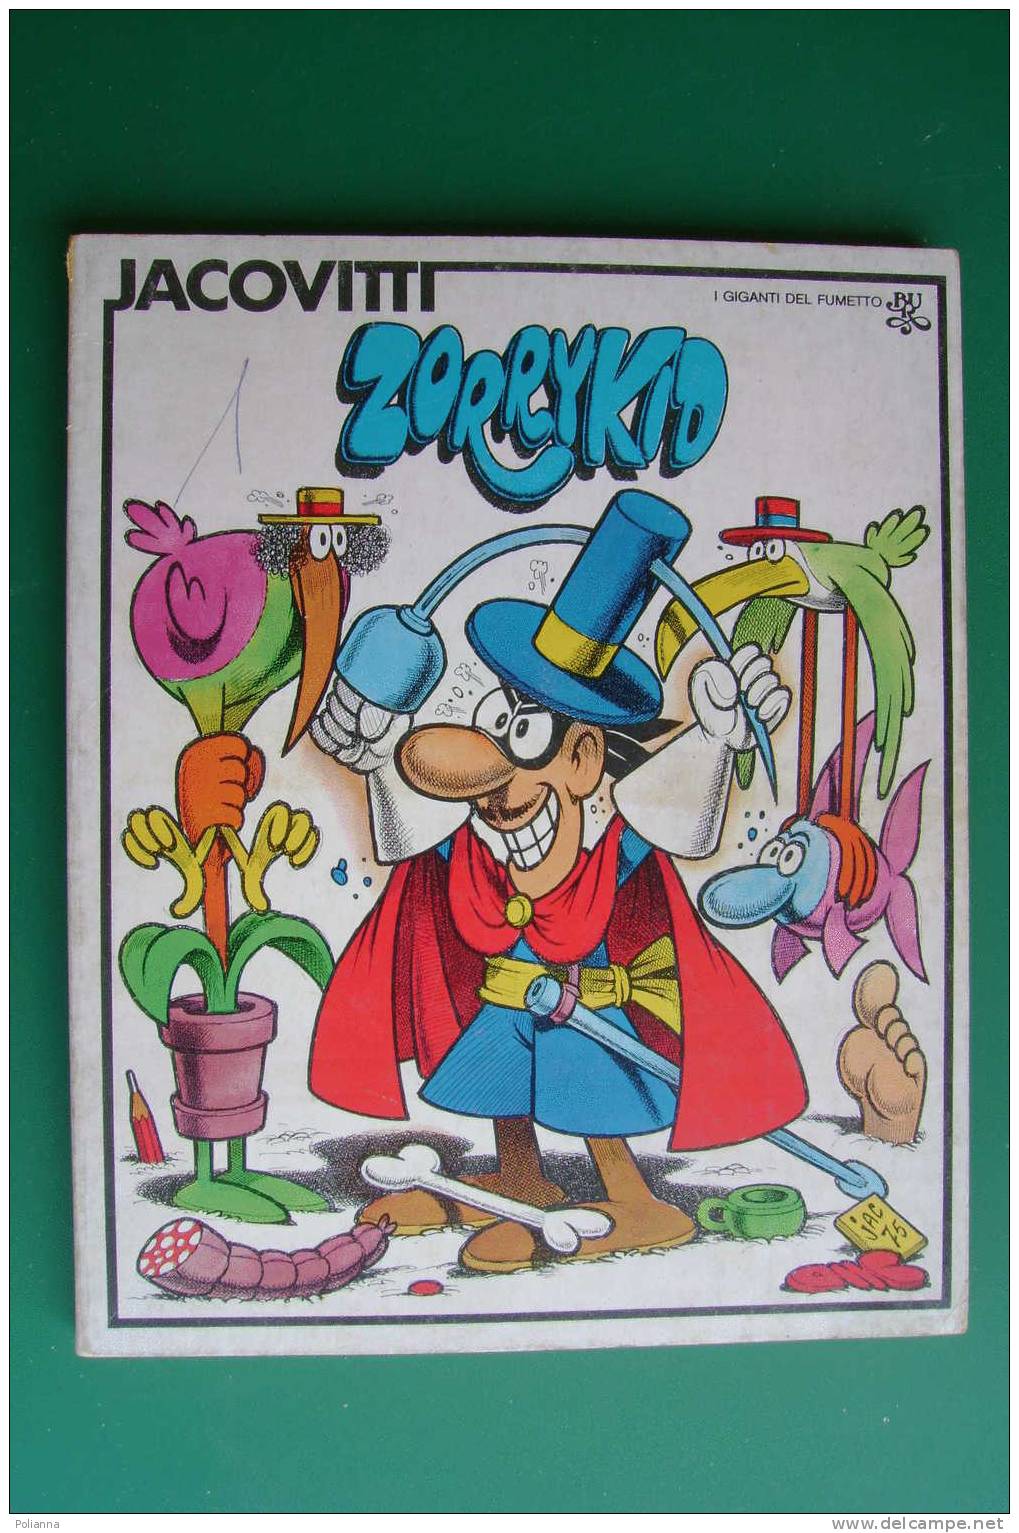 PDU/49 I Giganti Del Fumetto : Jacovitti ZORRYKID I Ed. BUR 1975 - Umoristici